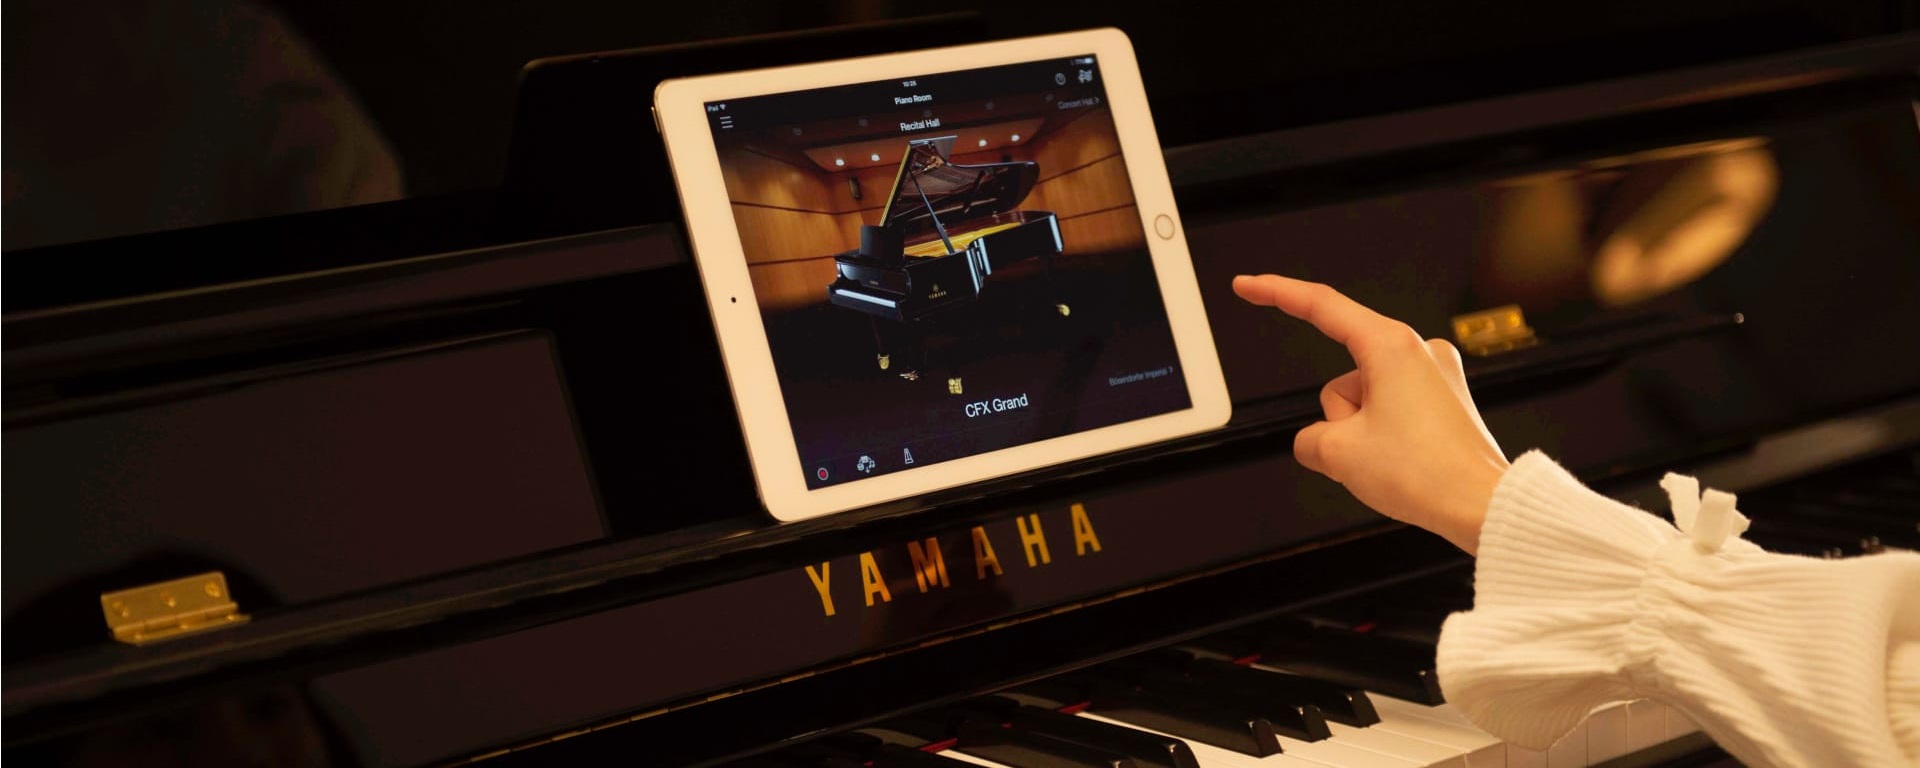 Yamaha TransAcoustic™ Hybrid Piano Technology